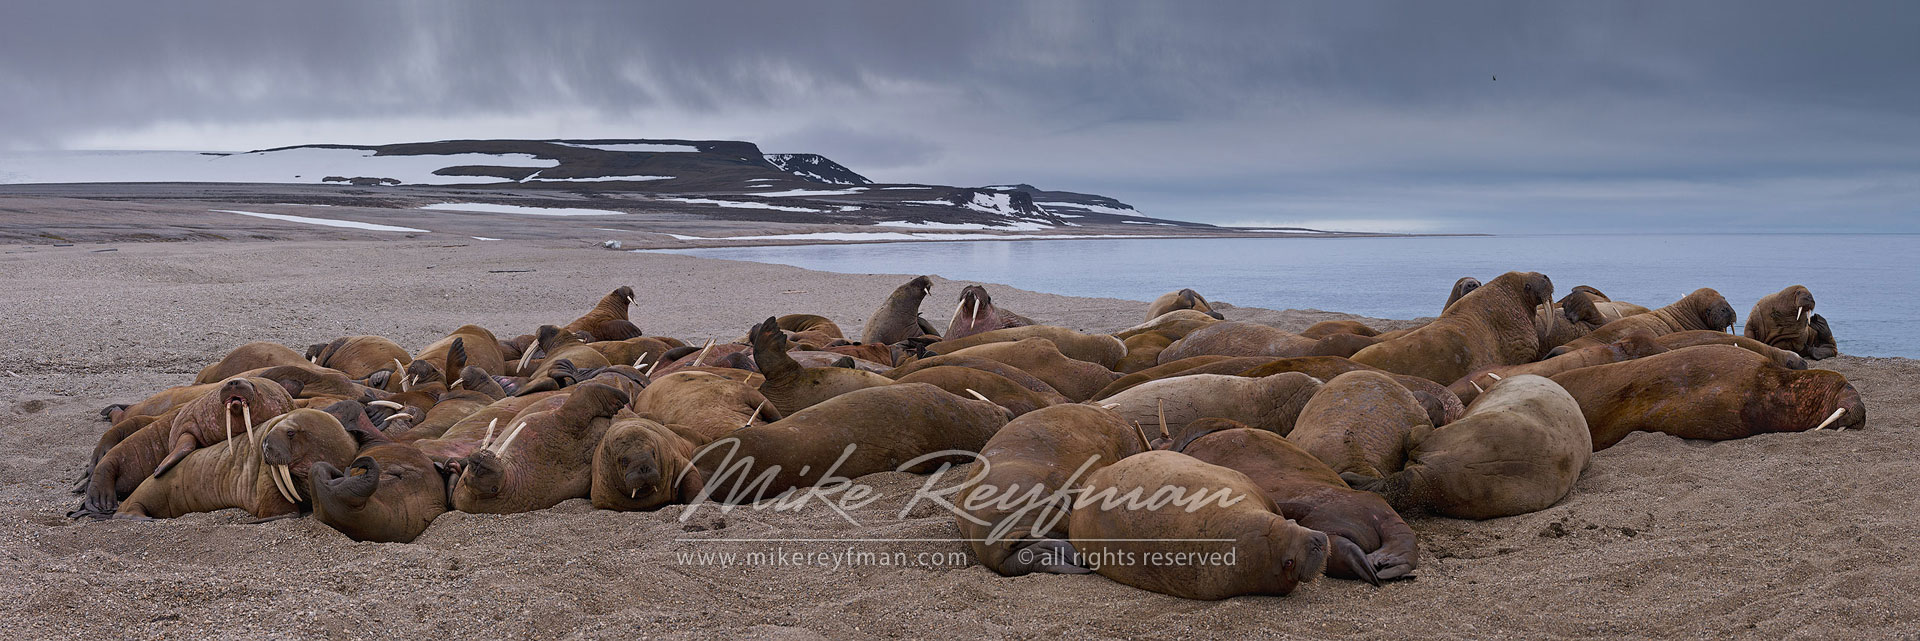 Walruses (Odobenus rosmarus) at Torrelnesset, Svalbard (Spitsbergen) Archipelago, Norway. - Wildlife-Svalbard-Spitsbergen-Norway - Mike Reyfman Photography